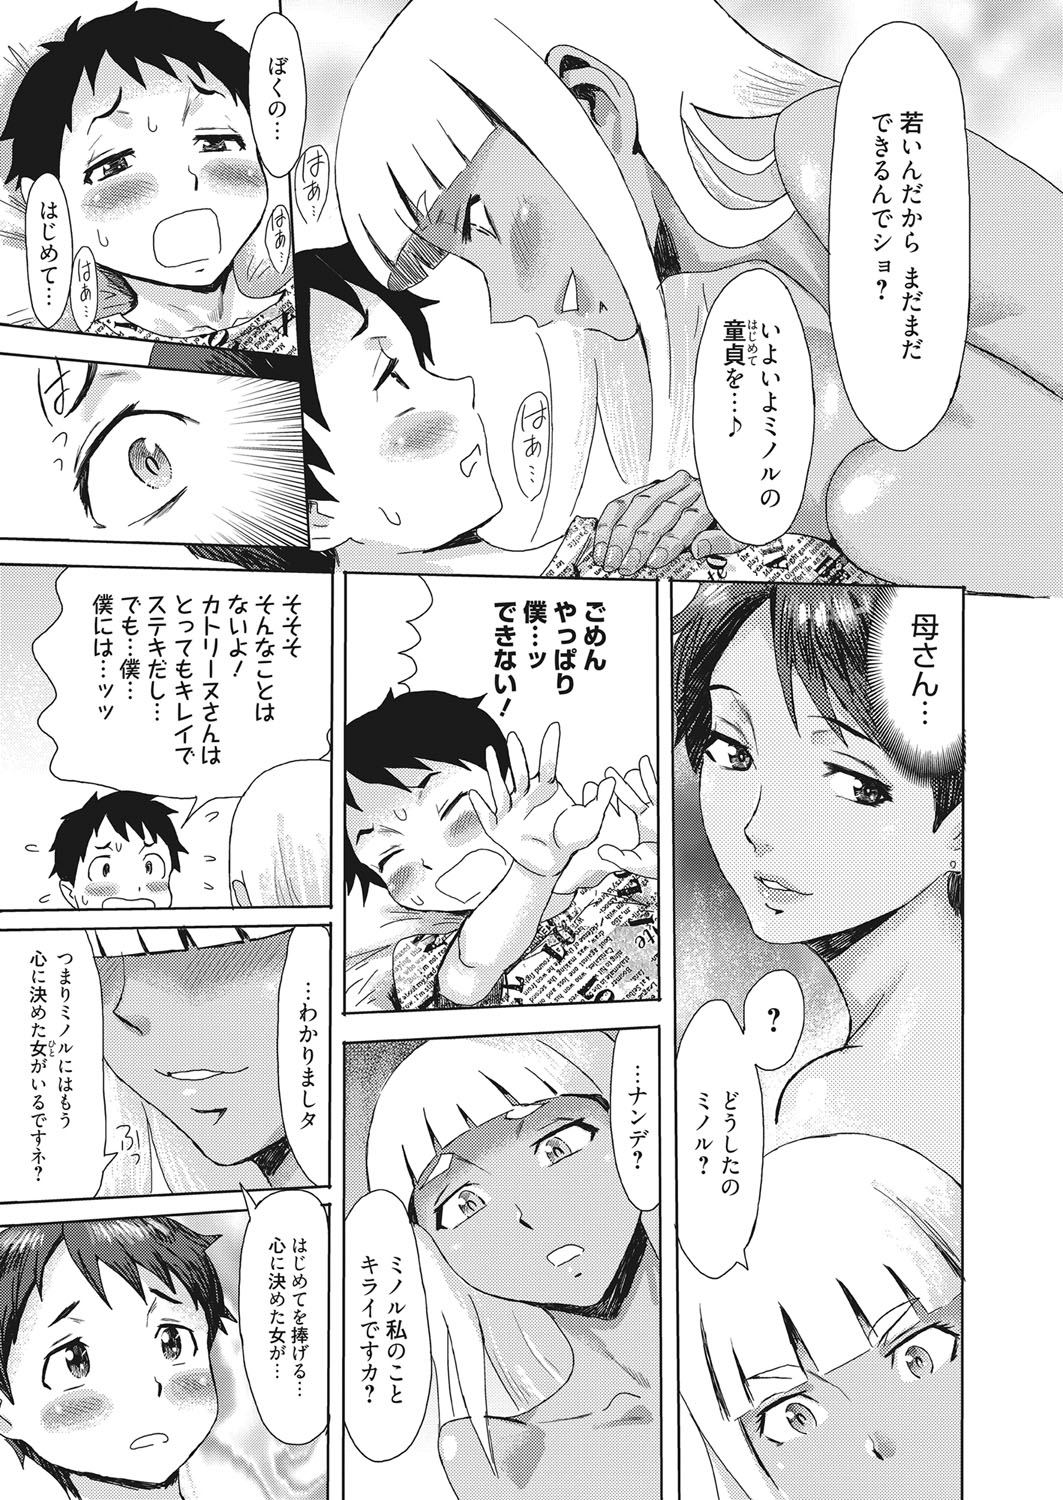 web 漫画ばんがいち Vol.13